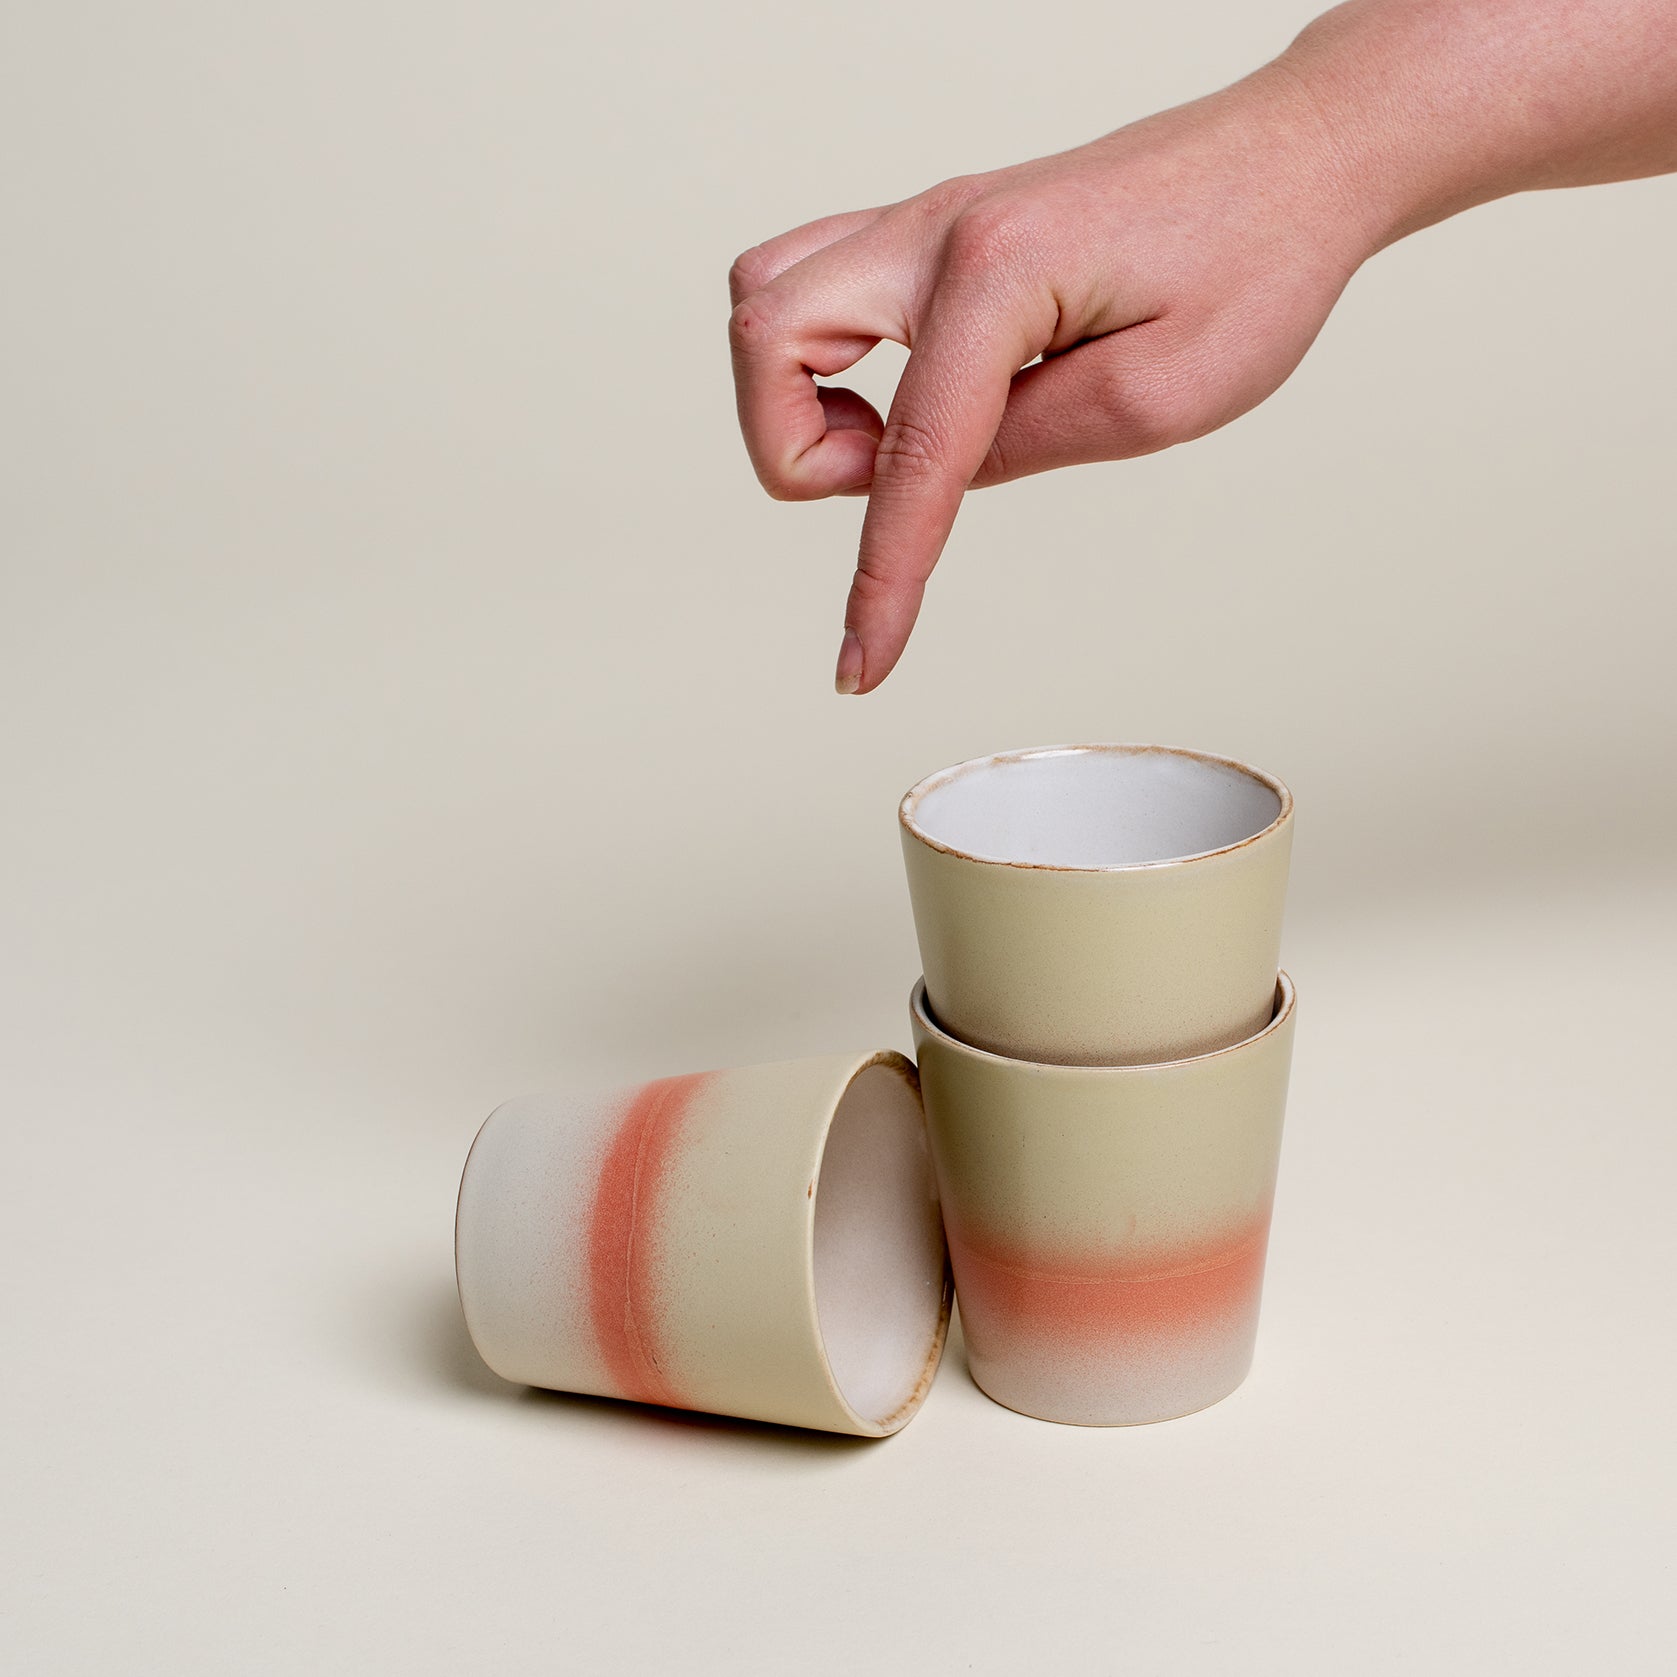  Tee Becher sind unten hell grau, in der Mitte orange und oben pastelle grün gefärbt. Eine Person zeigt von oben auf die Tassen.